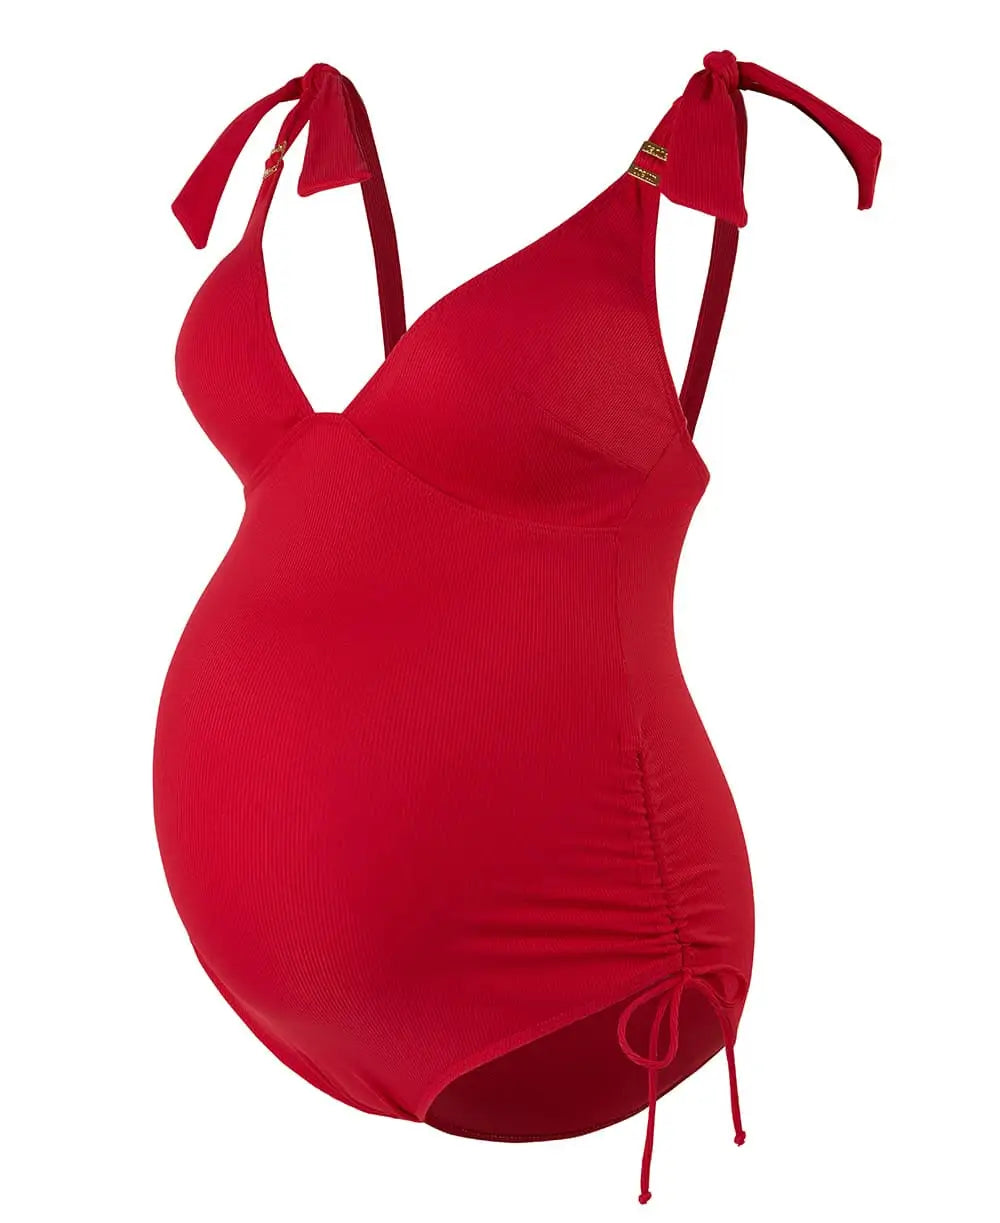 Maternity swimsuit Porto Vecchio red